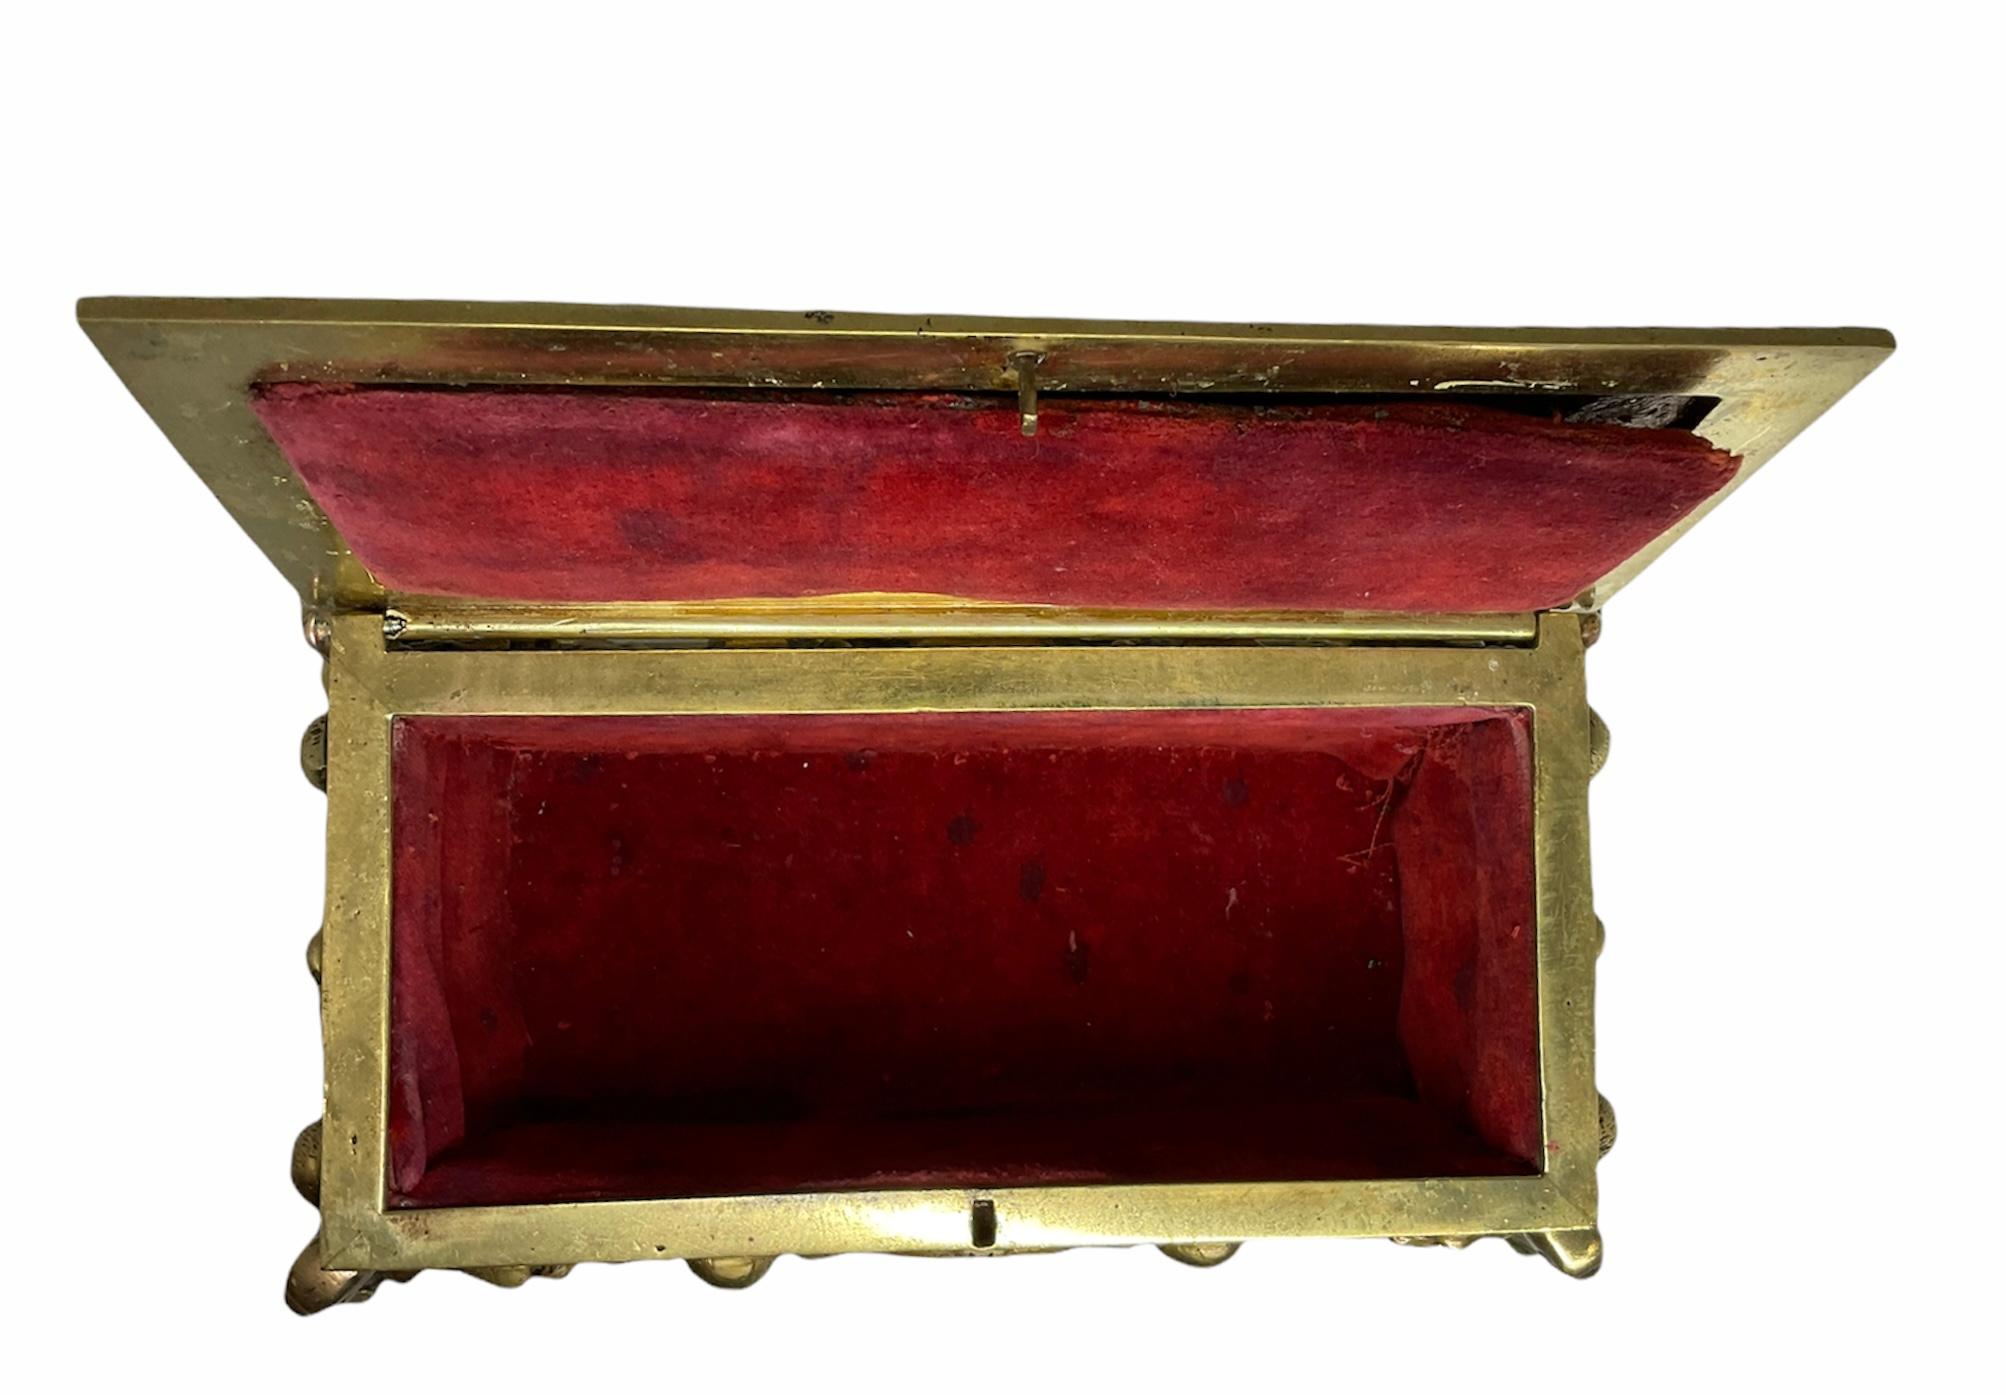 Il s'agit d'une boîte à bijoux/décorative rectangulaire en bronze doré repoussé. Il présente dans la partie supérieure du couvercle une scène de Don Quichotte chevauchant son cheval alors que des moutons courent à côté d'eux. Des chérubins tenant